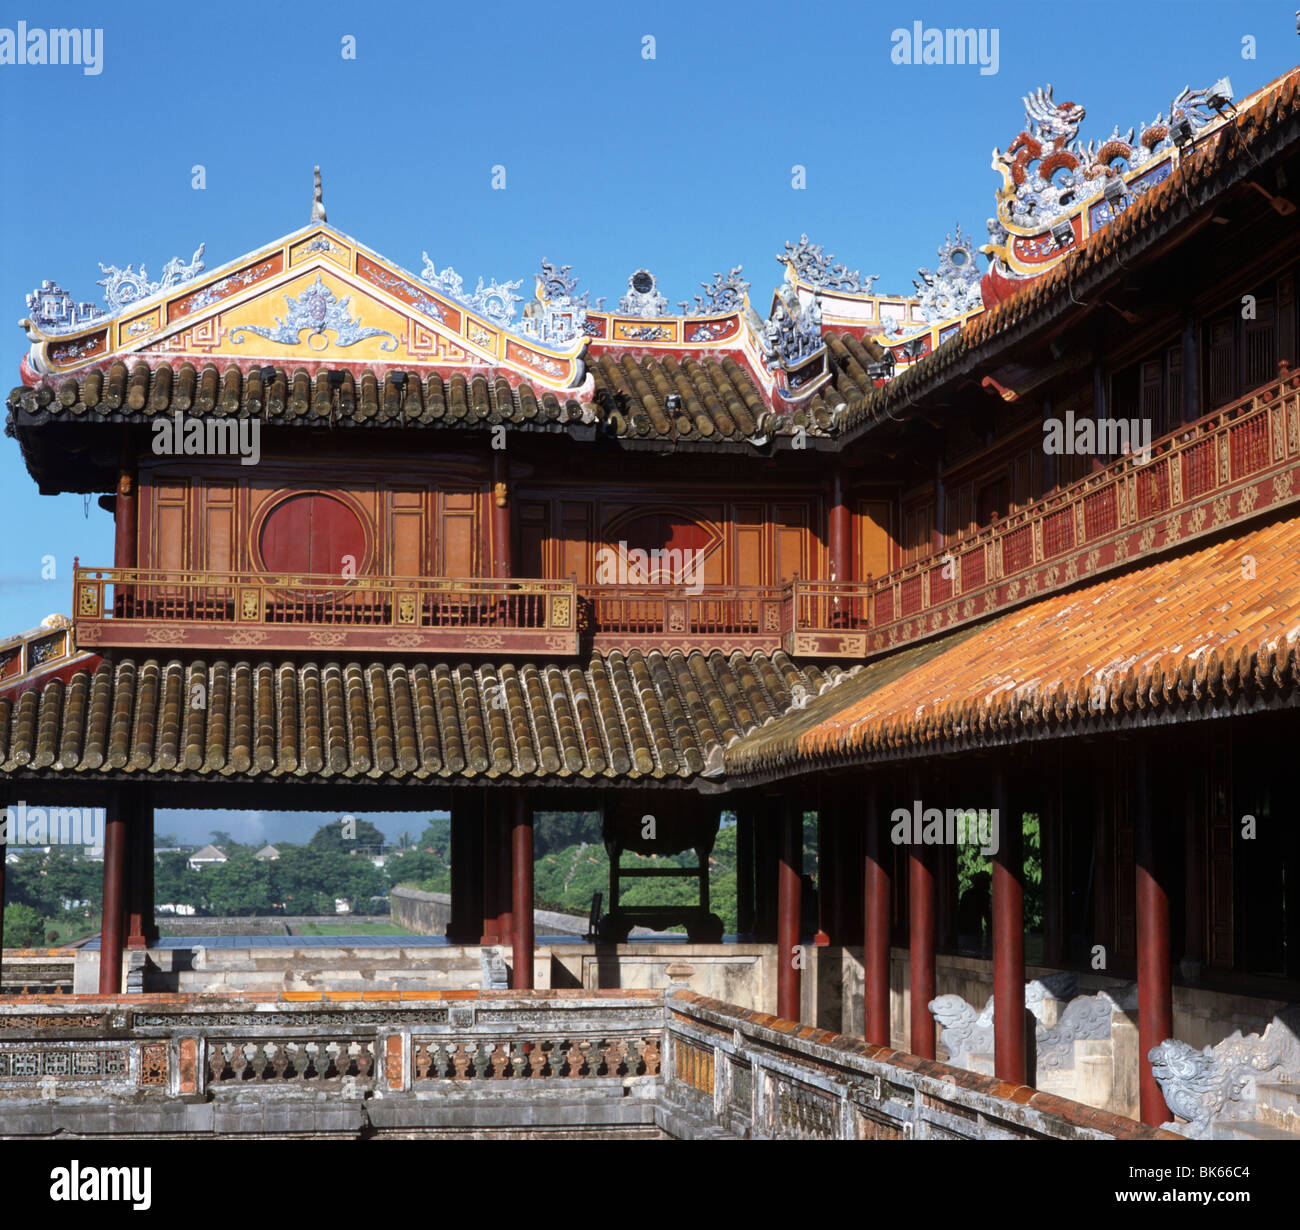 La ong Mon Gate (puerta de la luna), la Ciudadela, Hue, Sitio del Patrimonio Mundial de la UNESCO, Vietnam, Indochina, en el sudeste de Asia, Asia Foto de stock